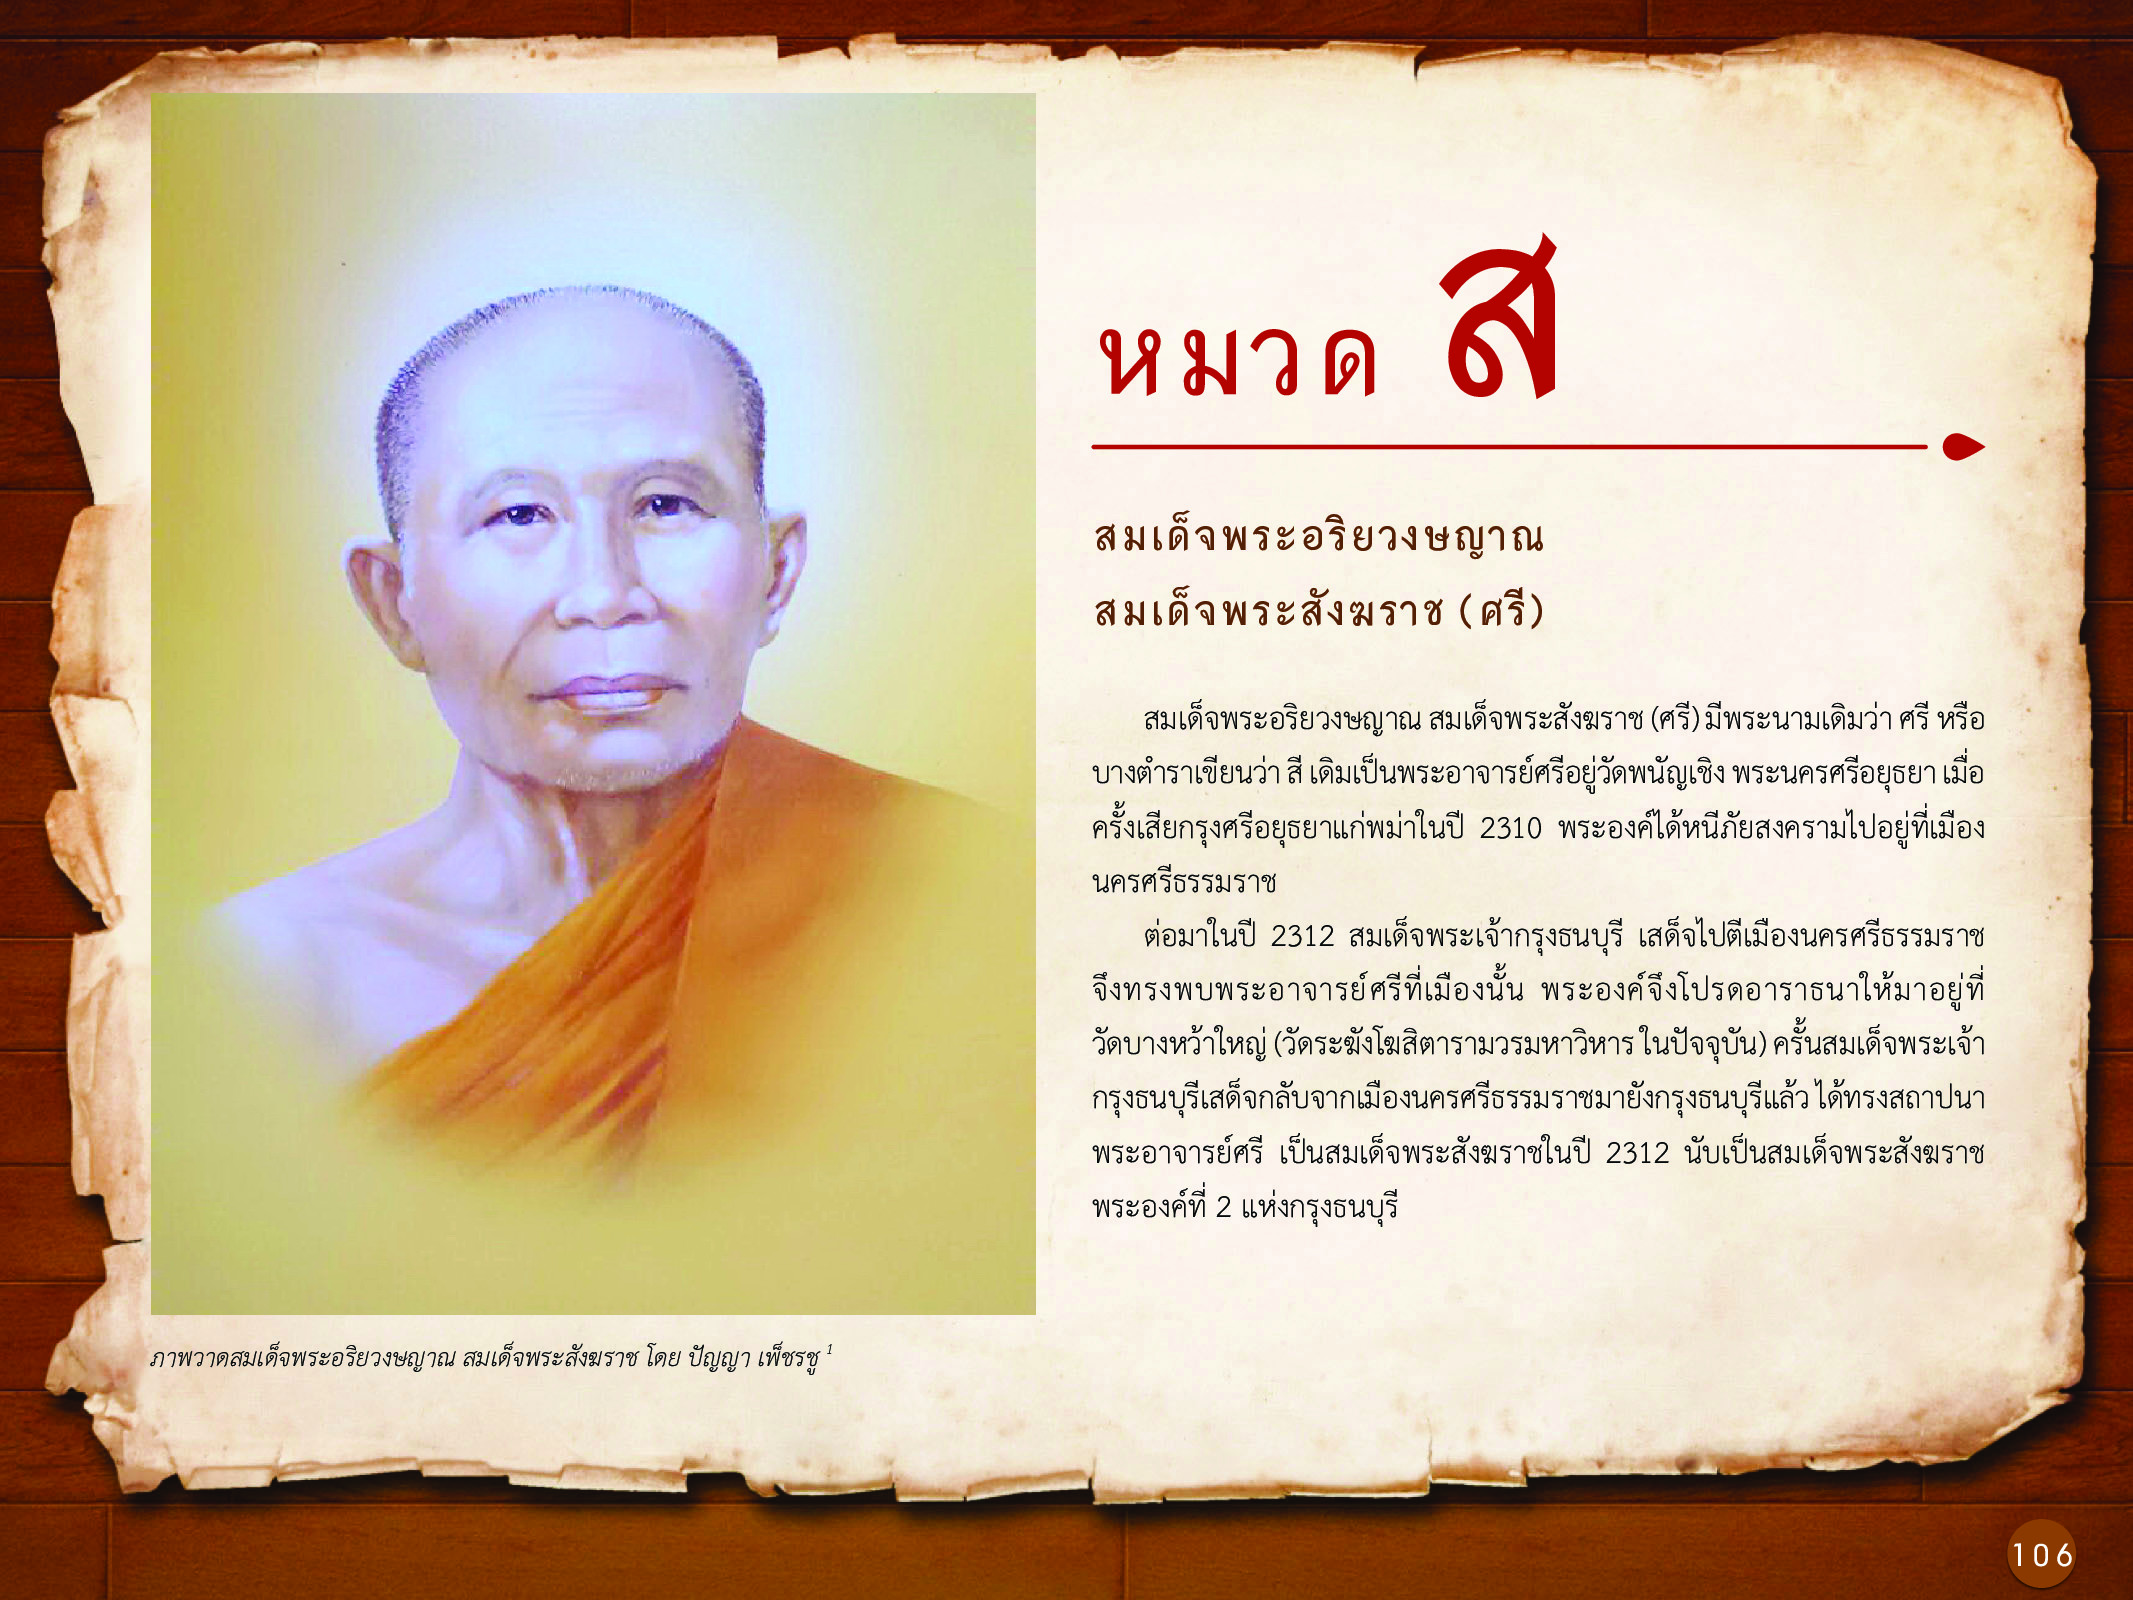 ประวัติศาสตร์กรุงธนบุรี ./images/history_dhonburi/106.jpg